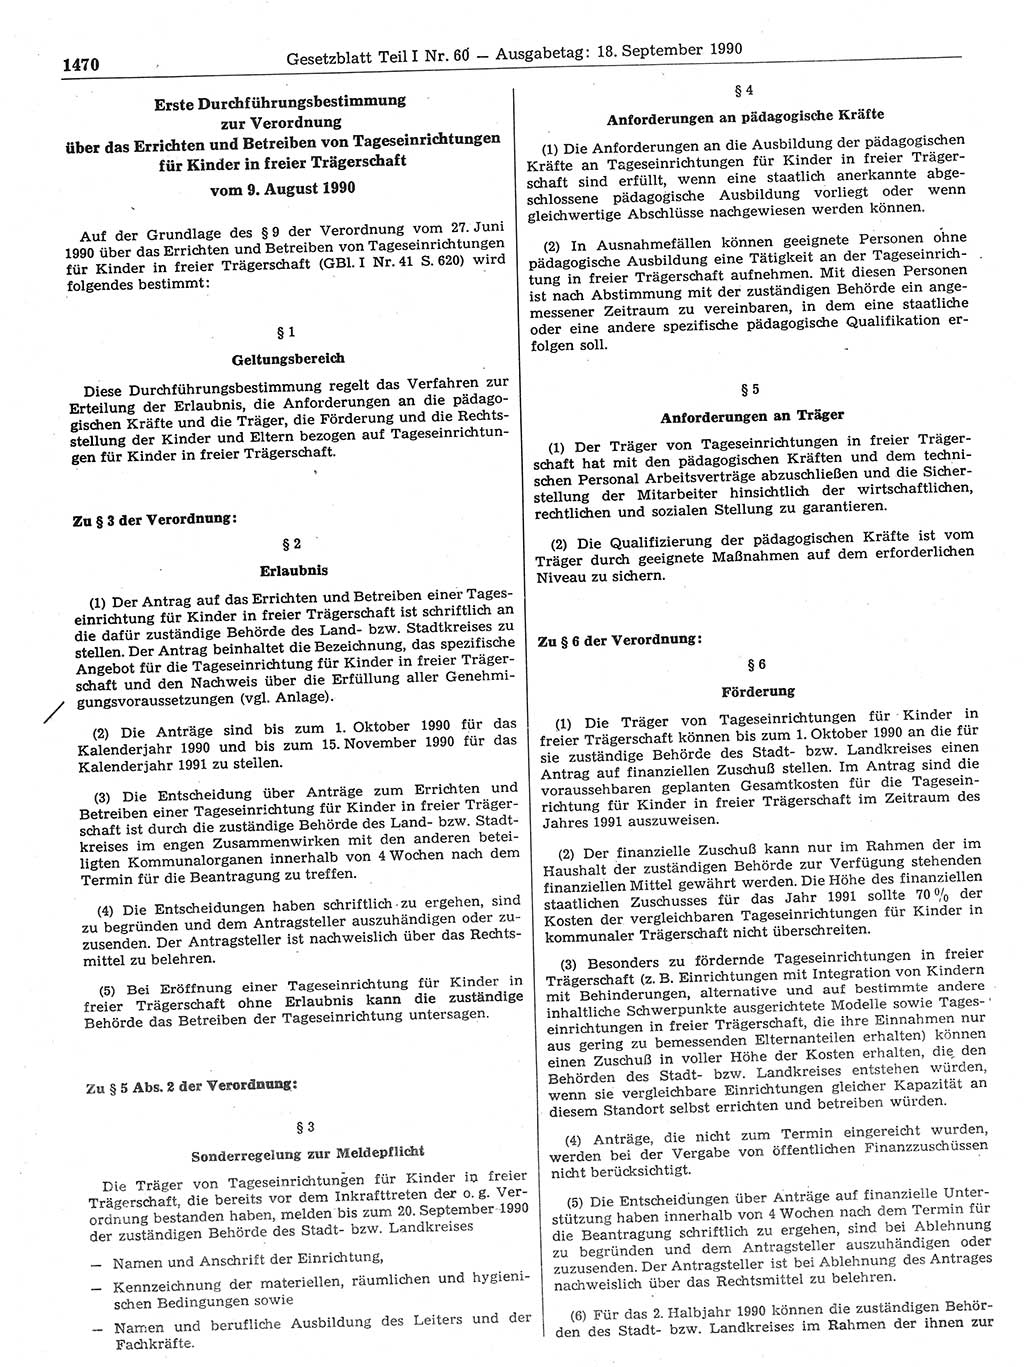 Gesetzblatt (GBl.) der Deutschen Demokratischen Republik (DDR) Teil Ⅰ 1990, Seite 1470 (GBl. DDR Ⅰ 1990, S. 1470)